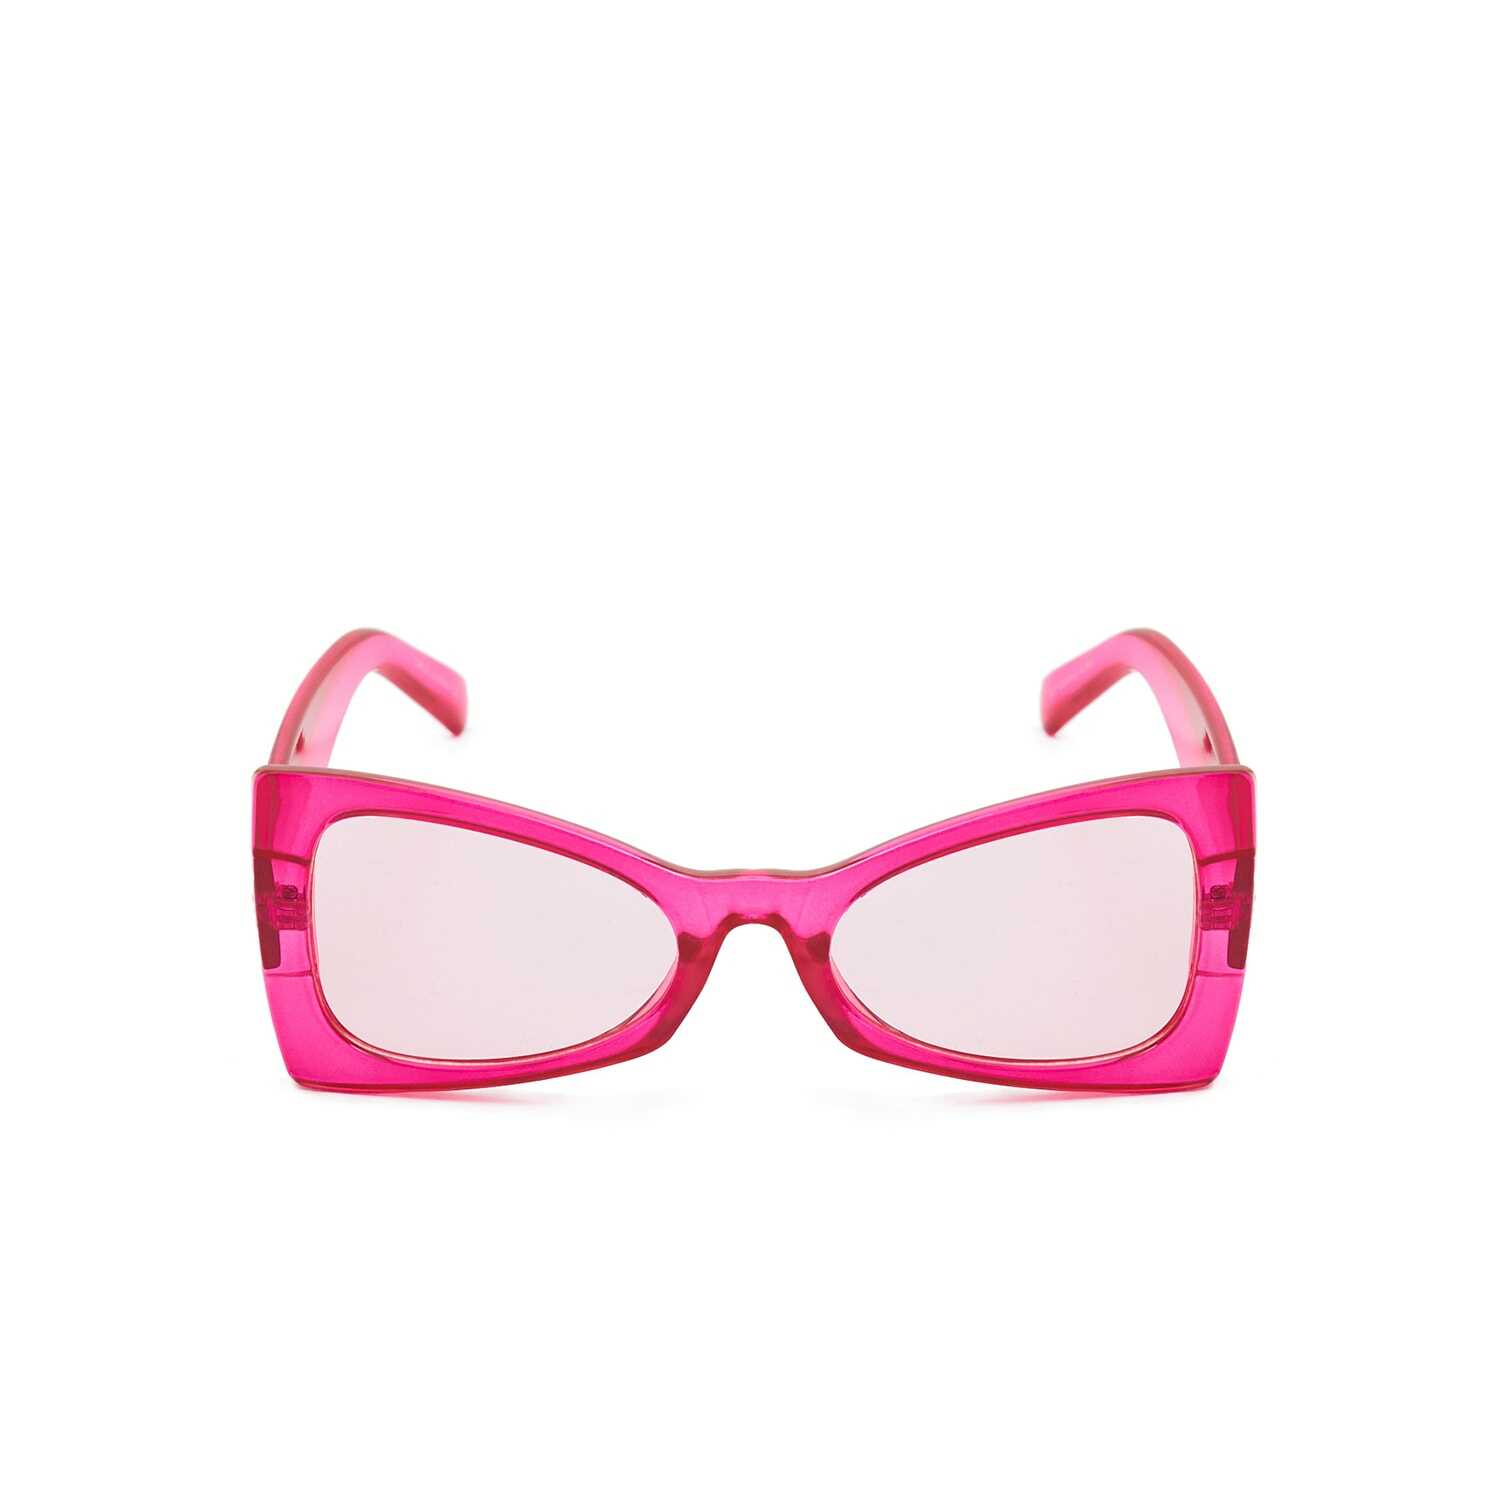 Cropp - Różowe okulary przeciwsłoneczne - Różowy